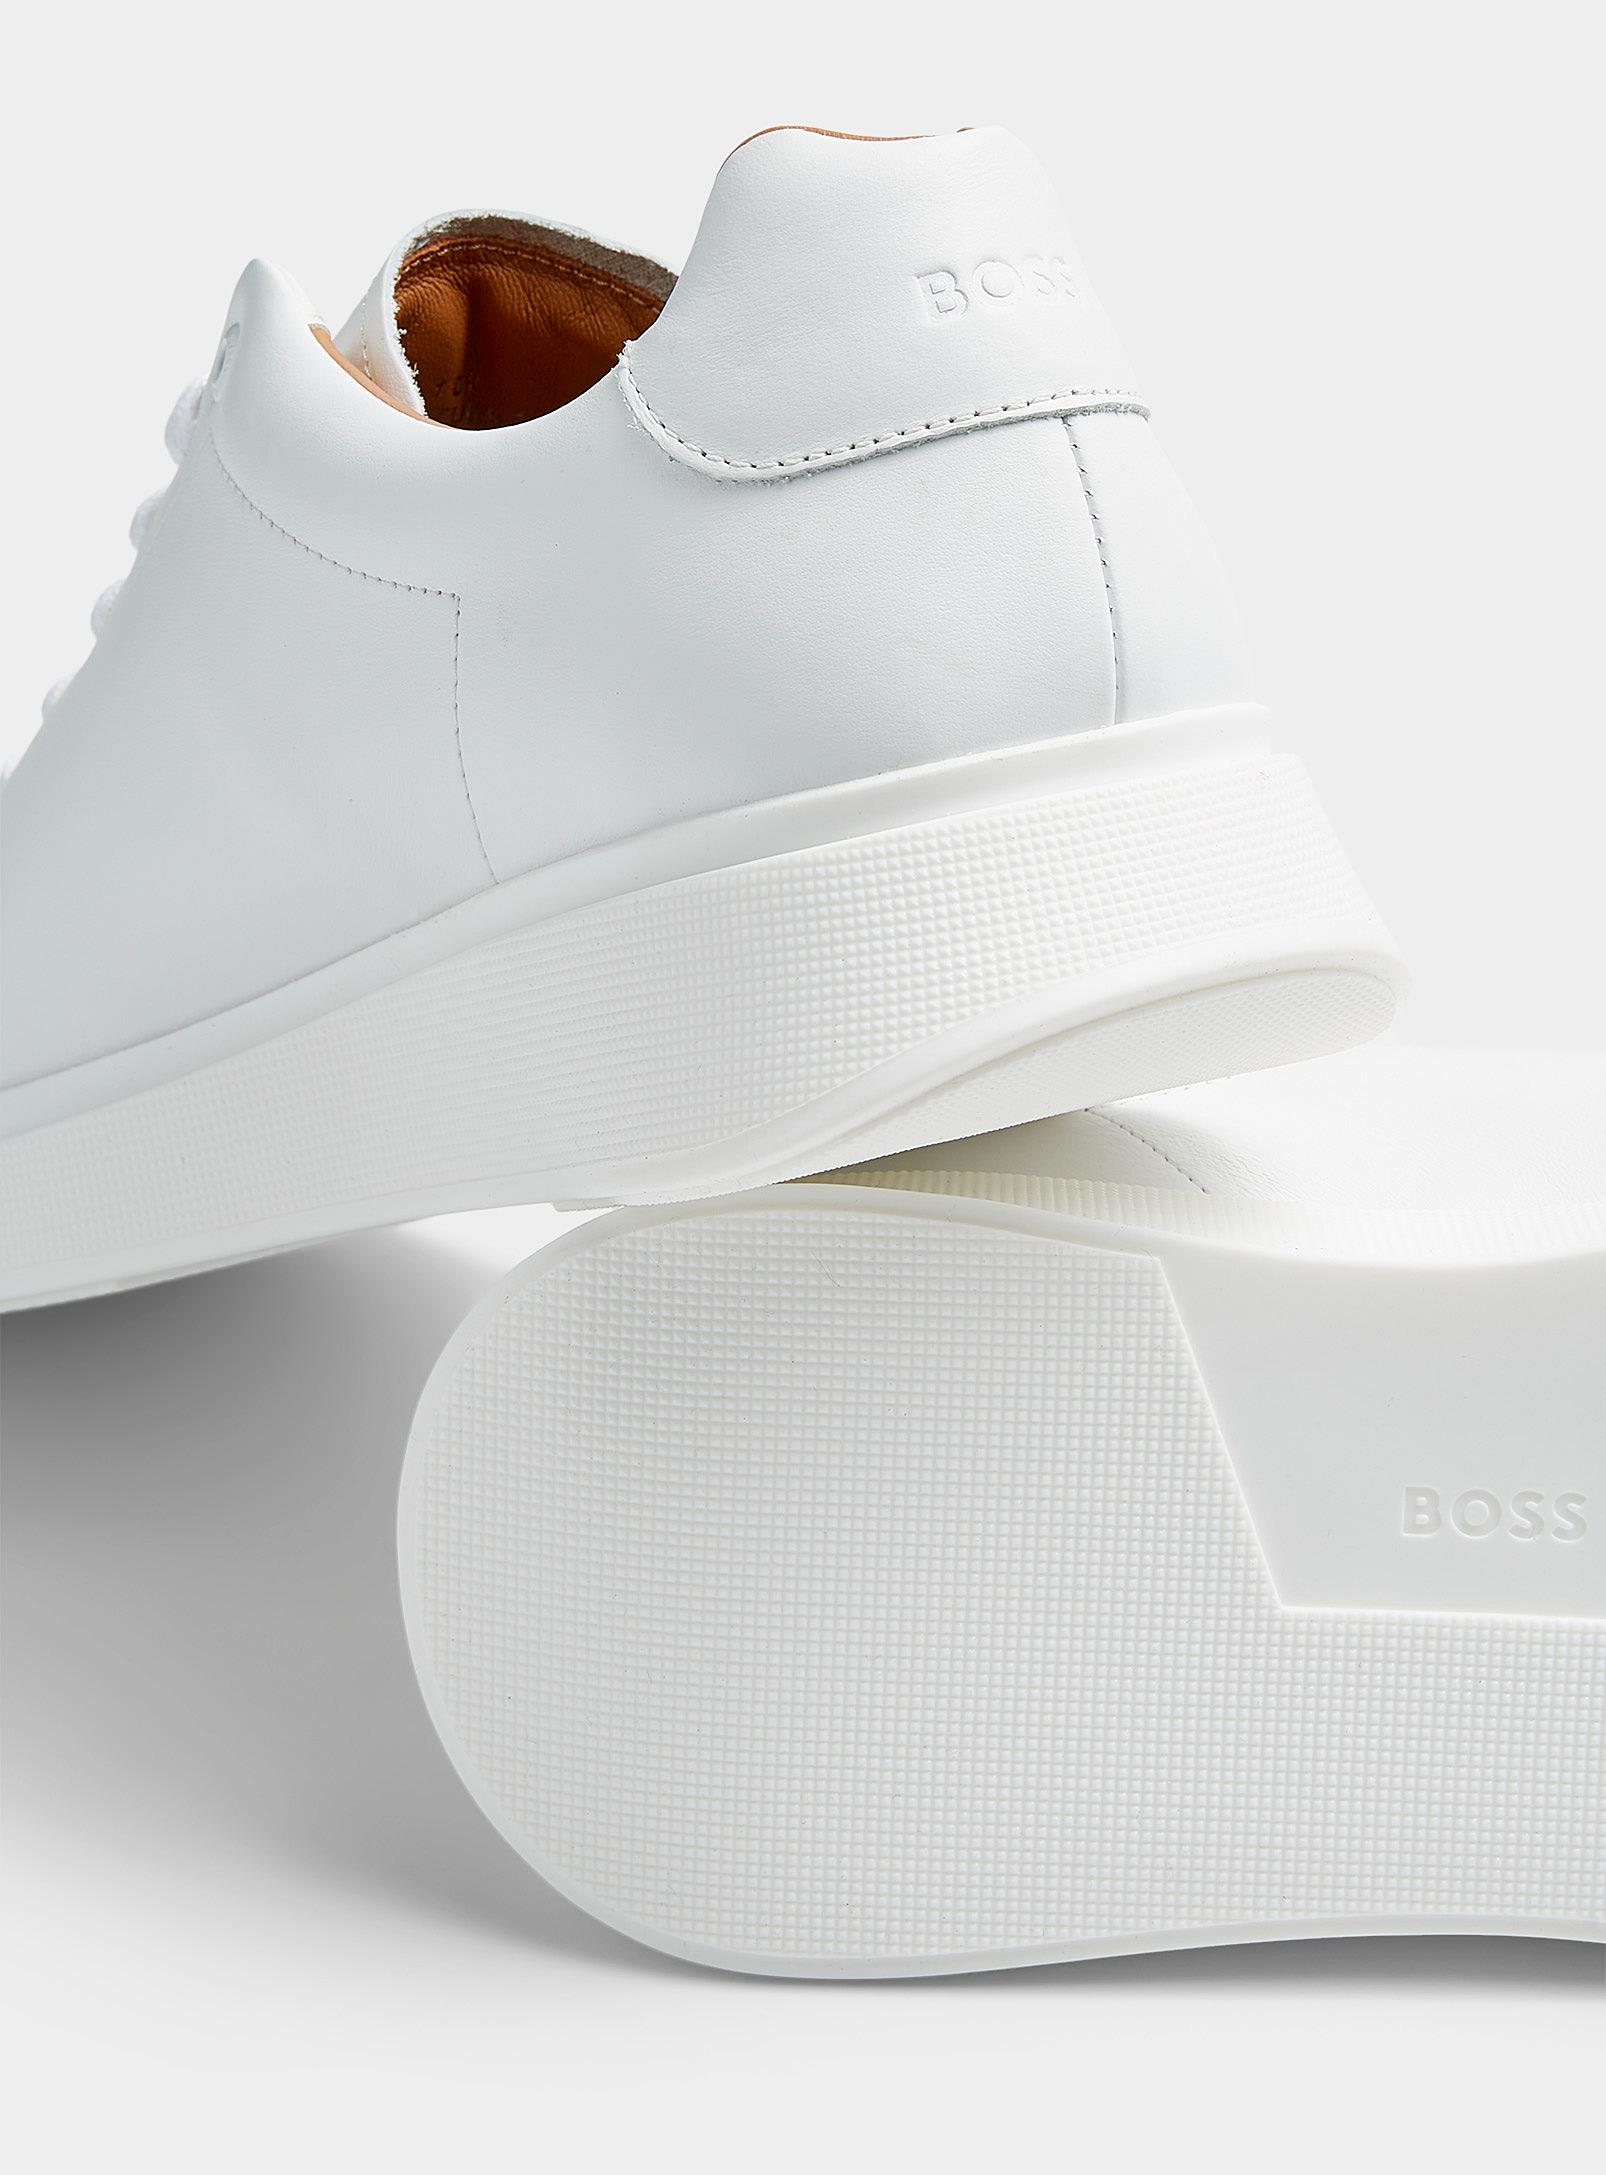 BOSS by HUGO BOSS Leather Sneaker Men in White for Men |